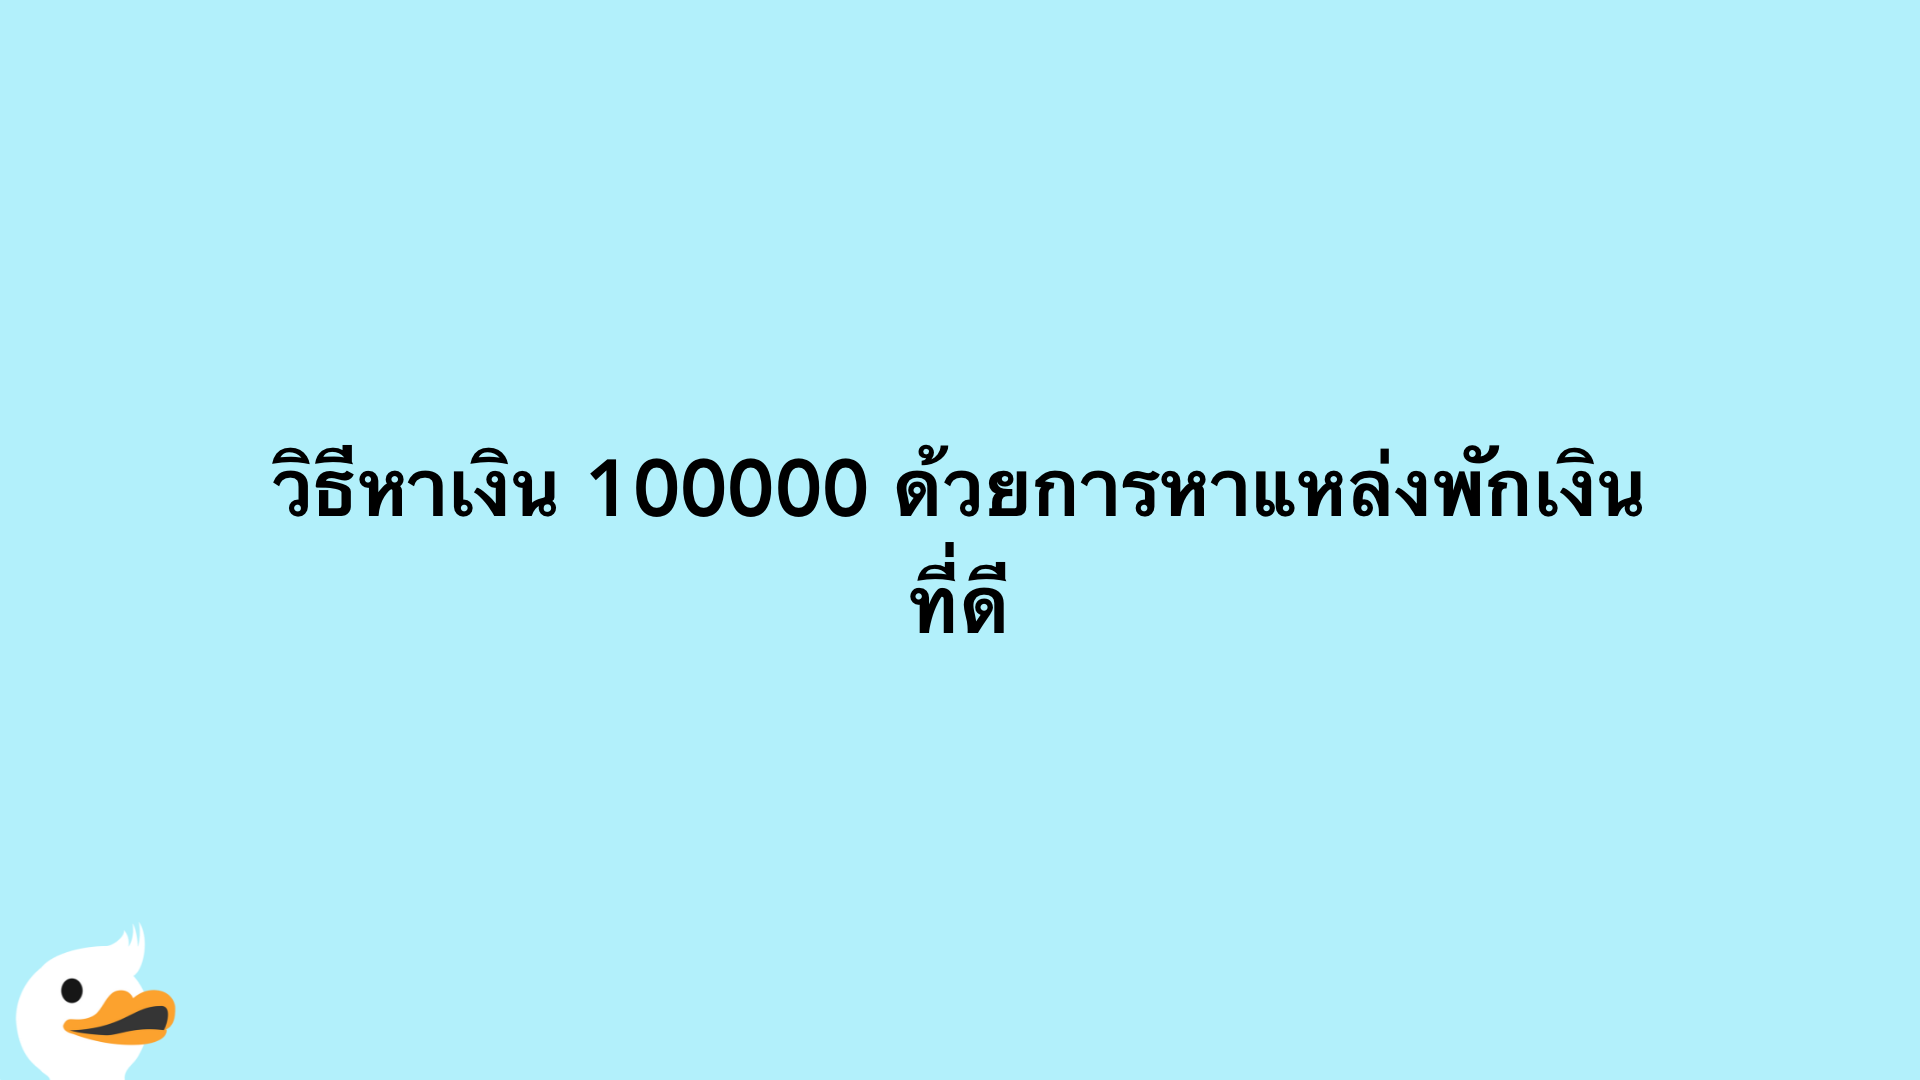 7 วิธีหาเงิน 100000 บาท ภายใน 1 ปี ทำได้จริง | Moneyduck Thailand